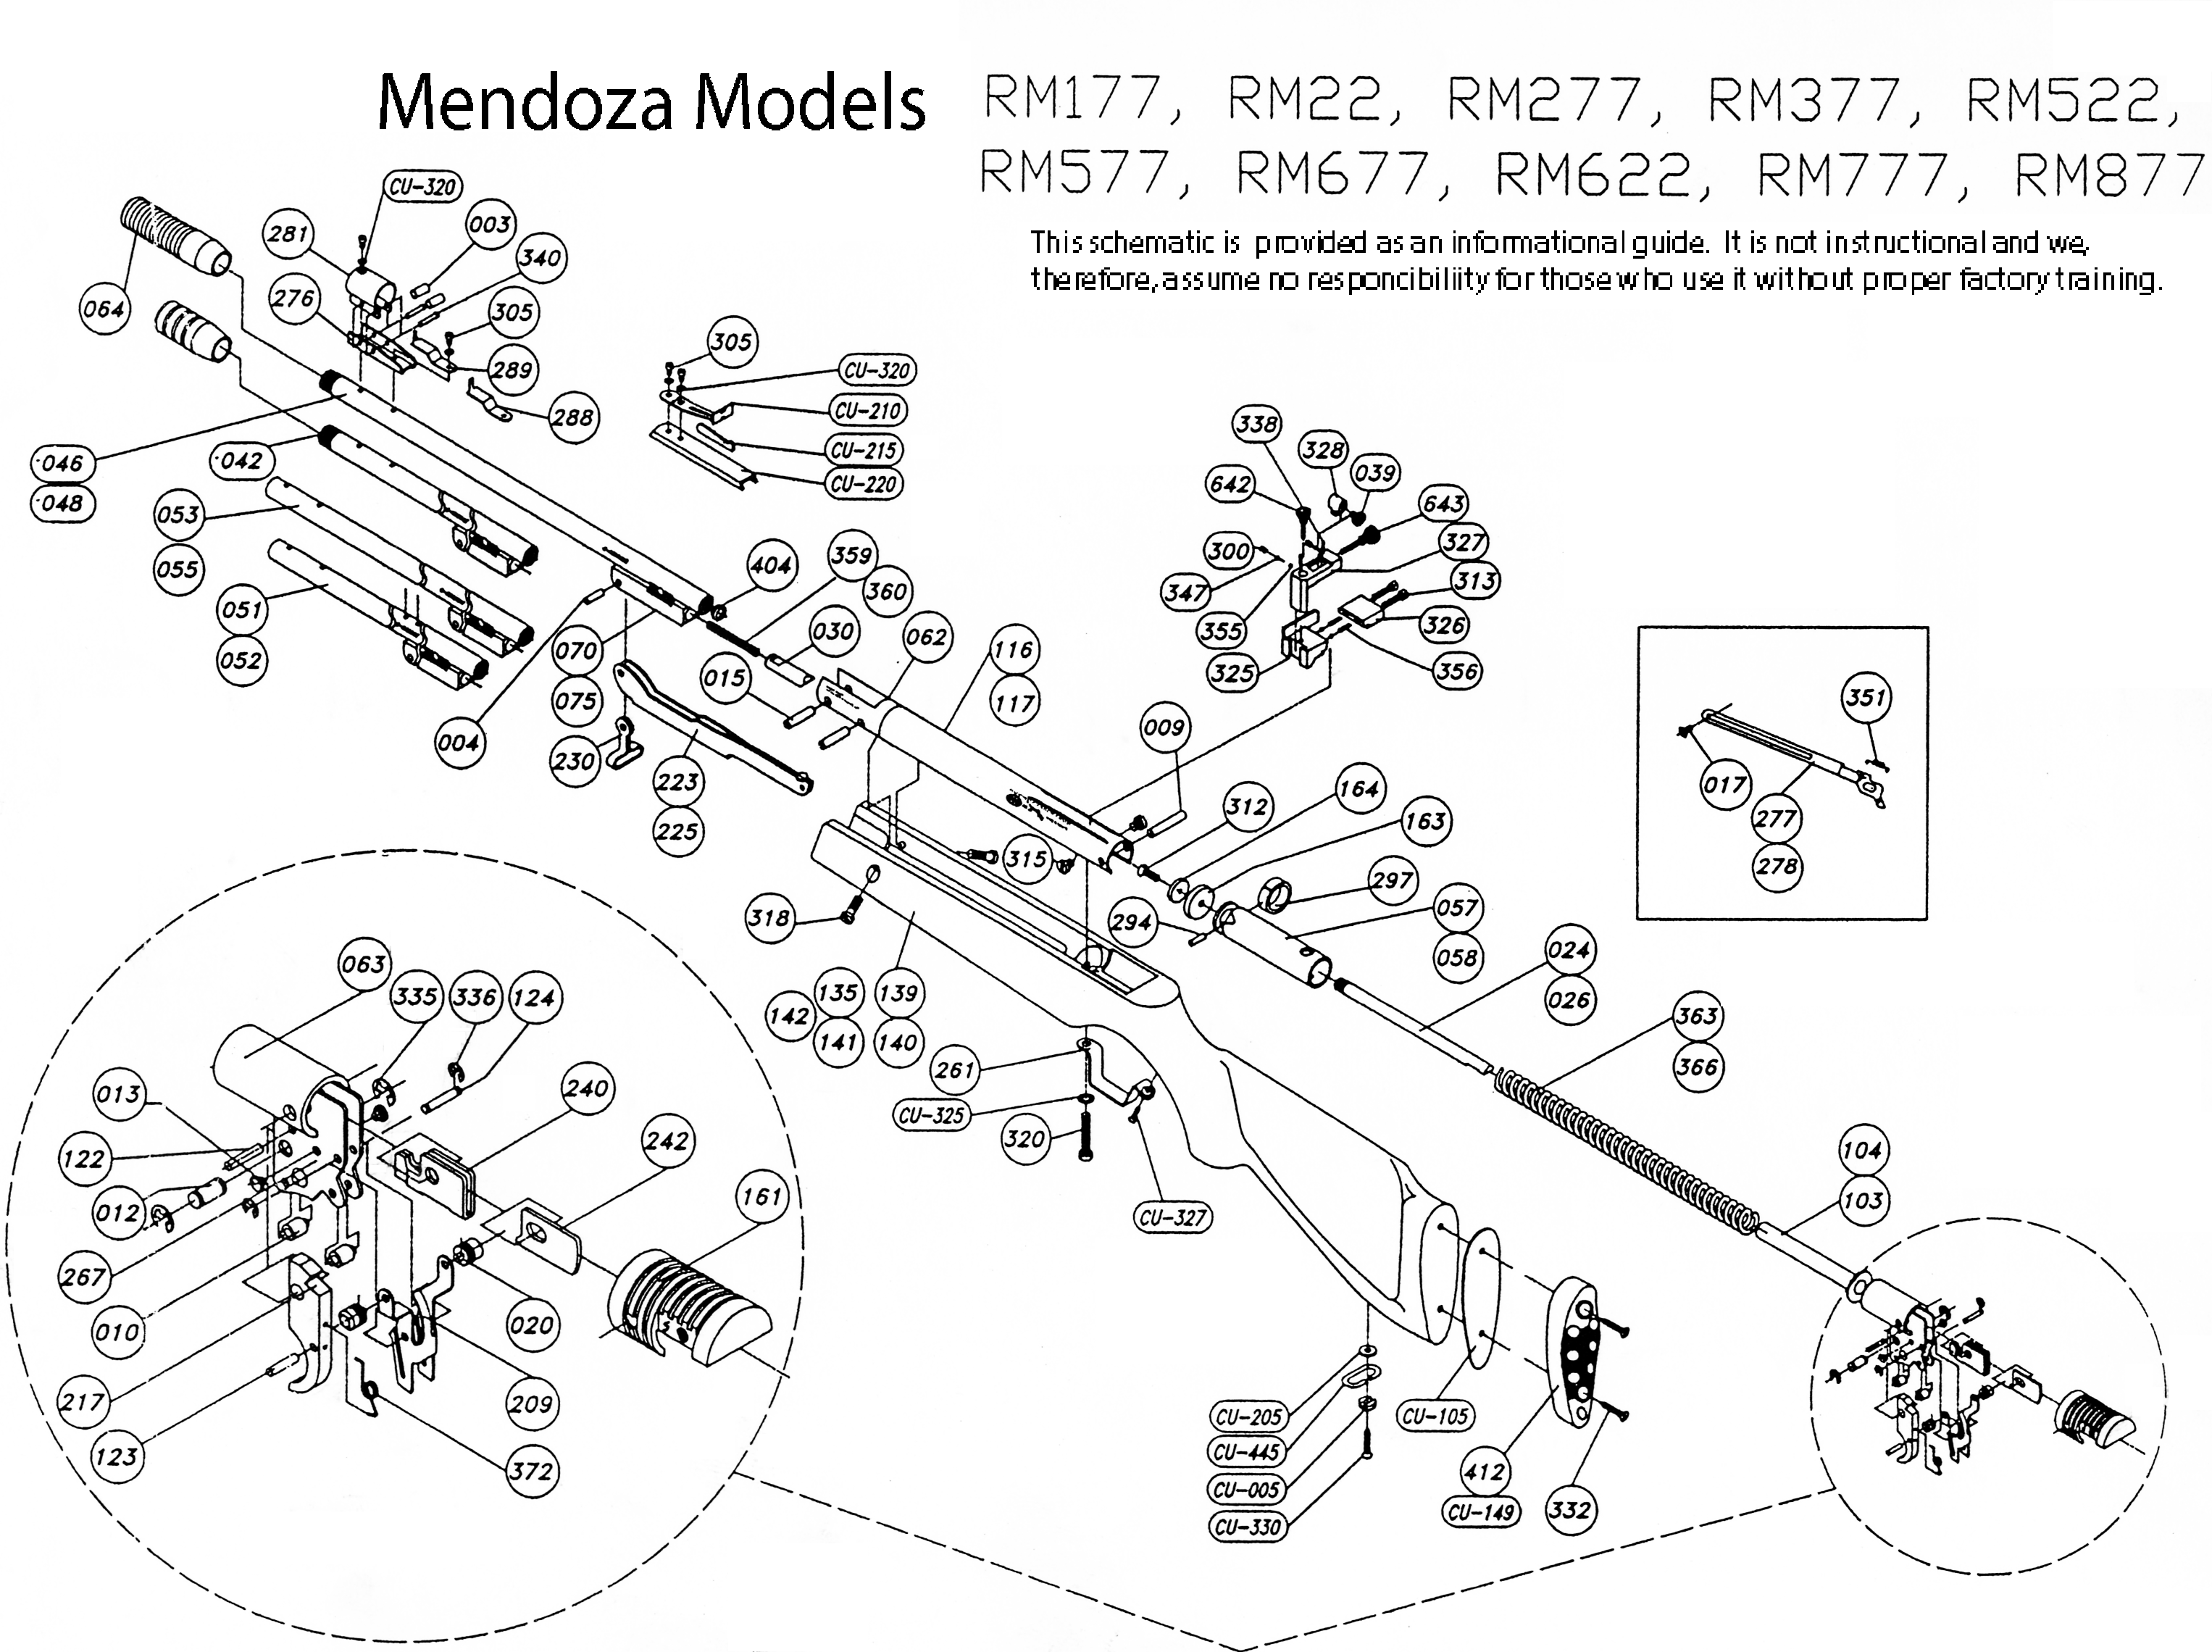 RM622 Schematic